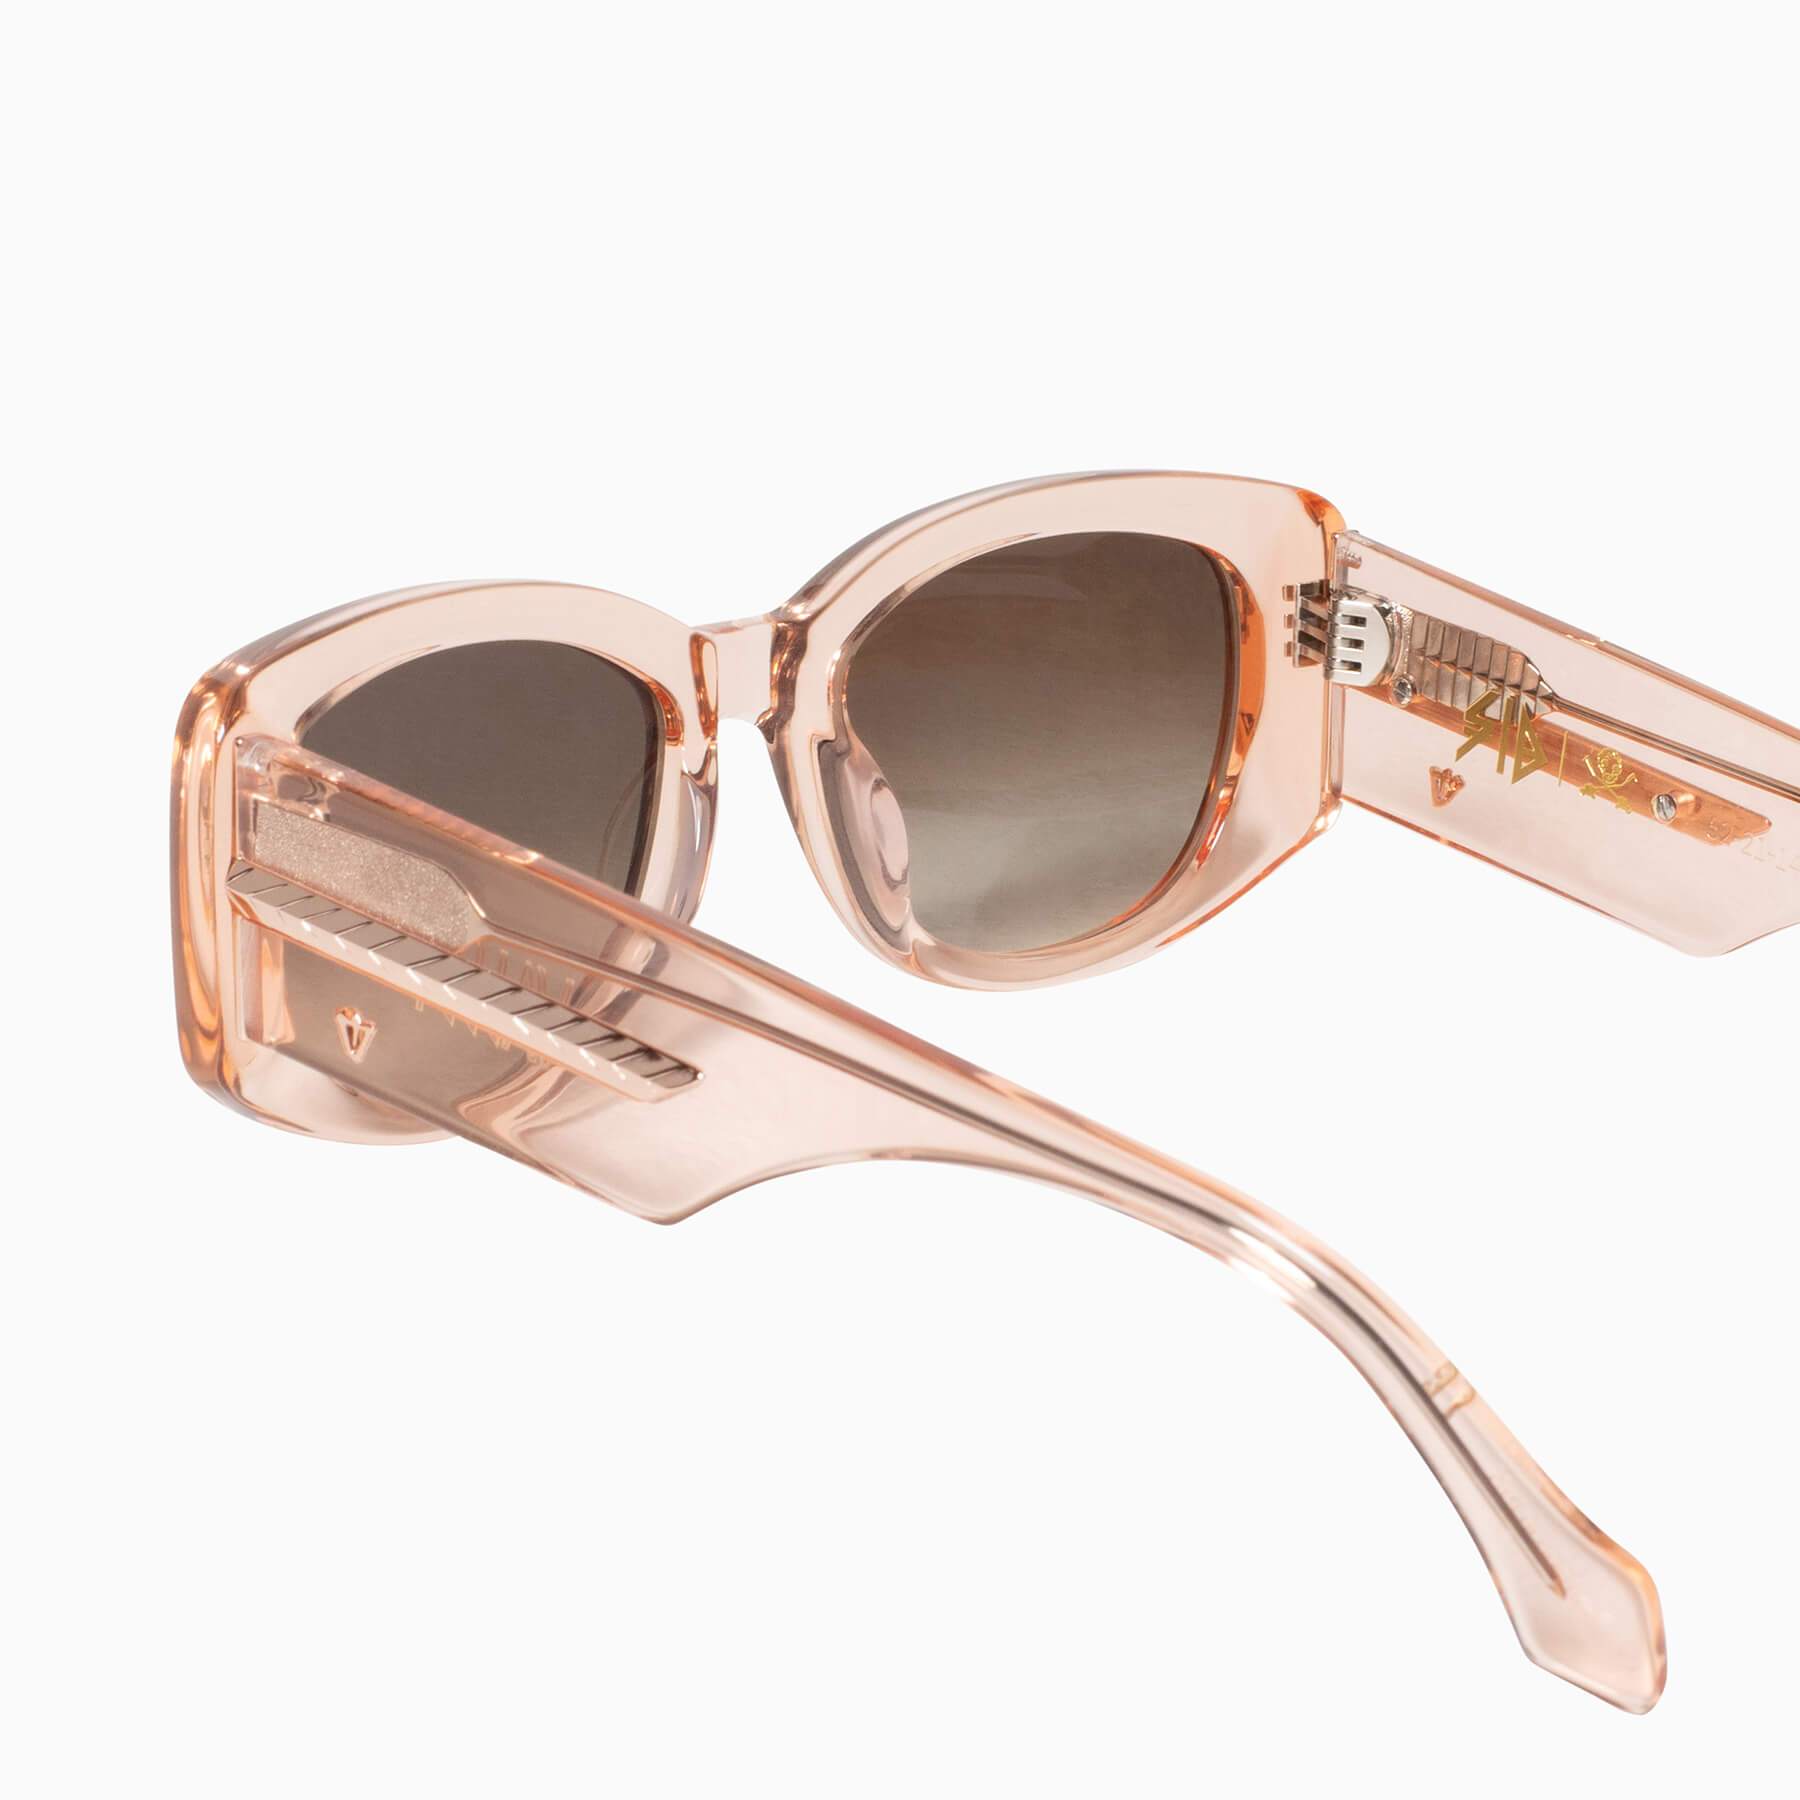 Valley Eyewear | Sid | Sunglasses - Crystal Pink w. Rose Gold Metal Trim / Brown Gradient